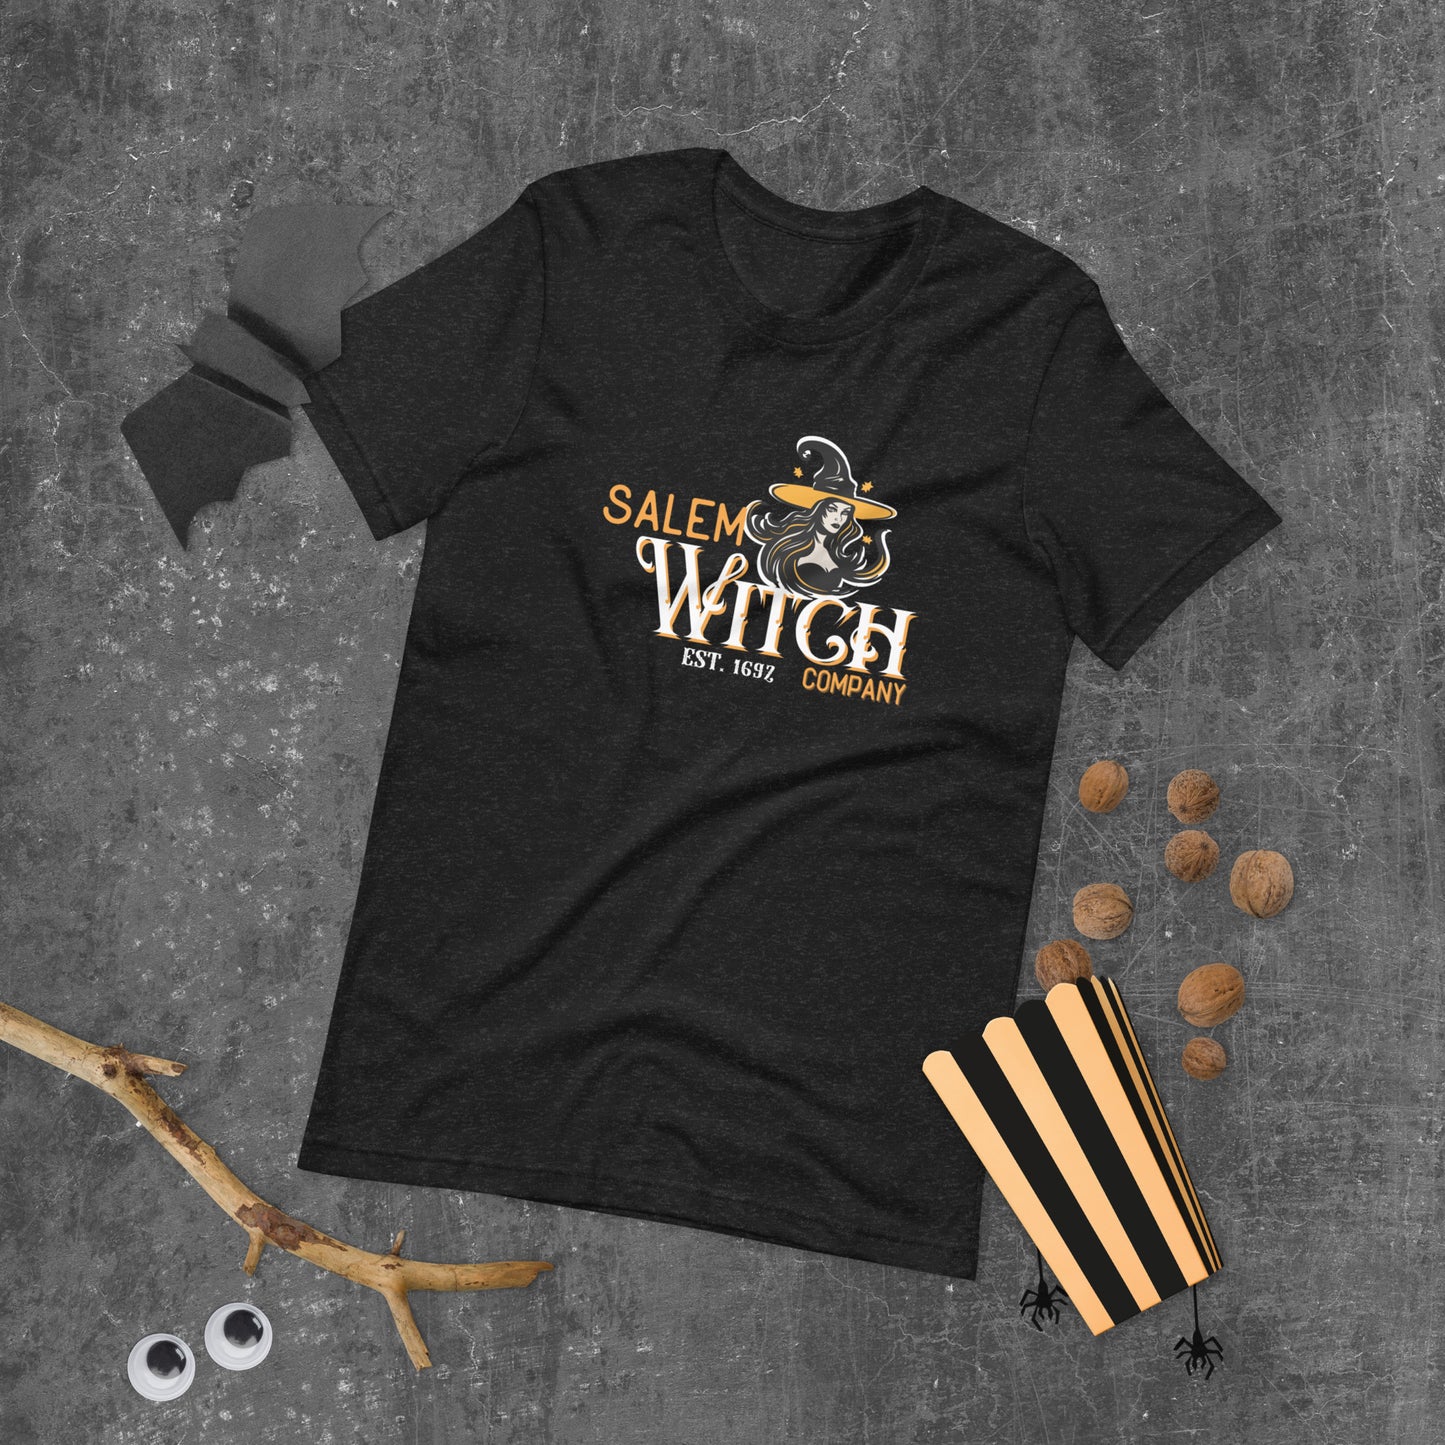 Salem Witch Company Tee